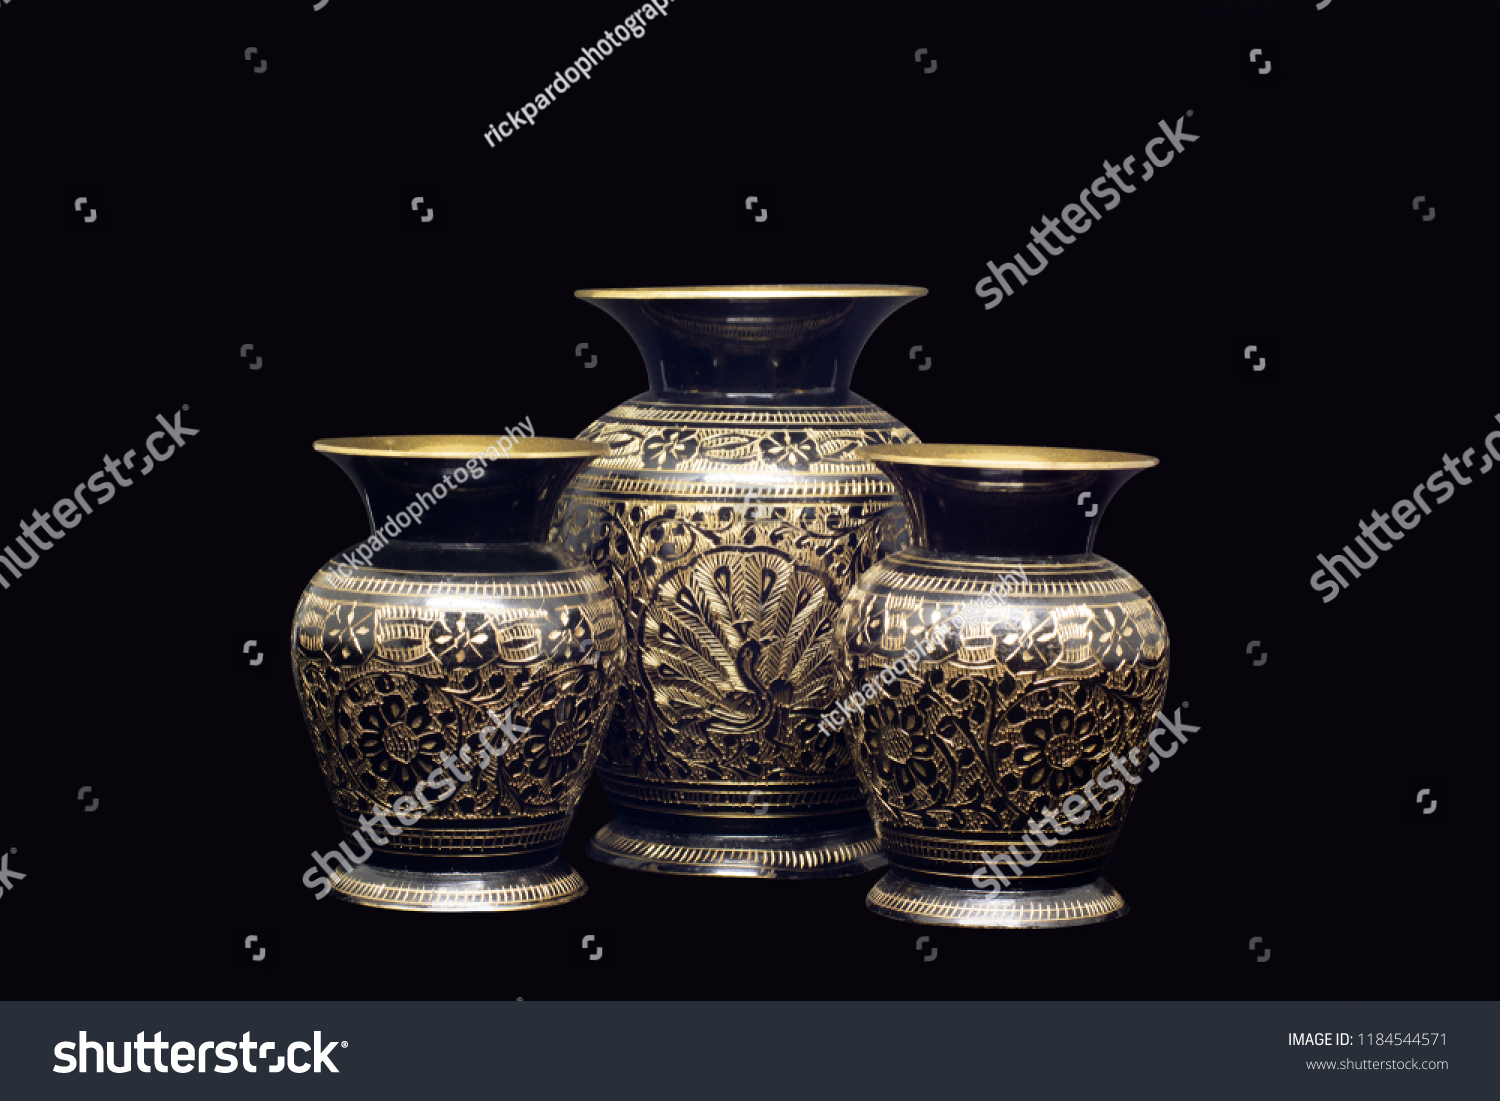 golden vases in a black background  #1184544571